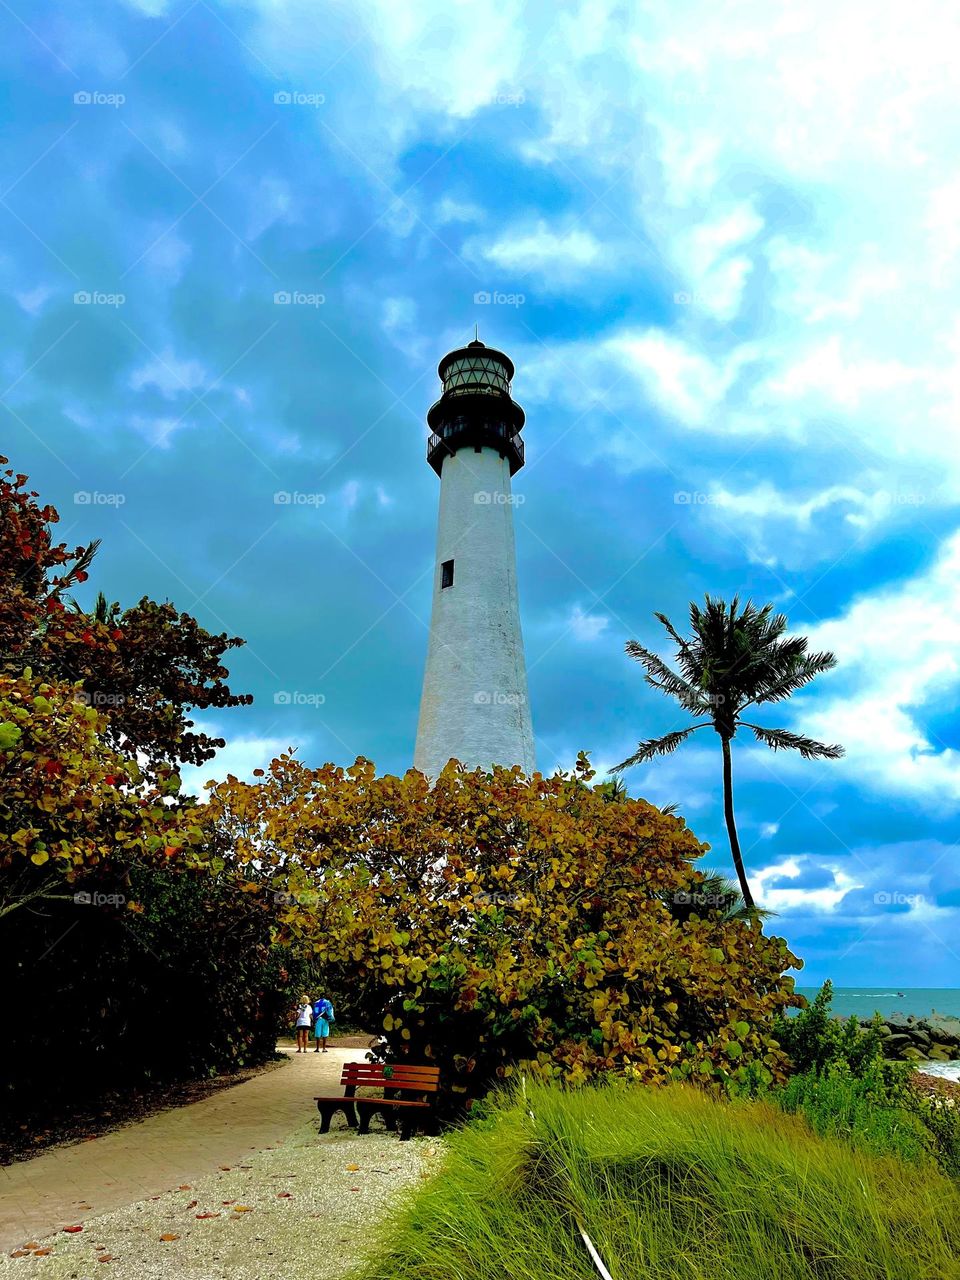 Lighthouse on a Beach